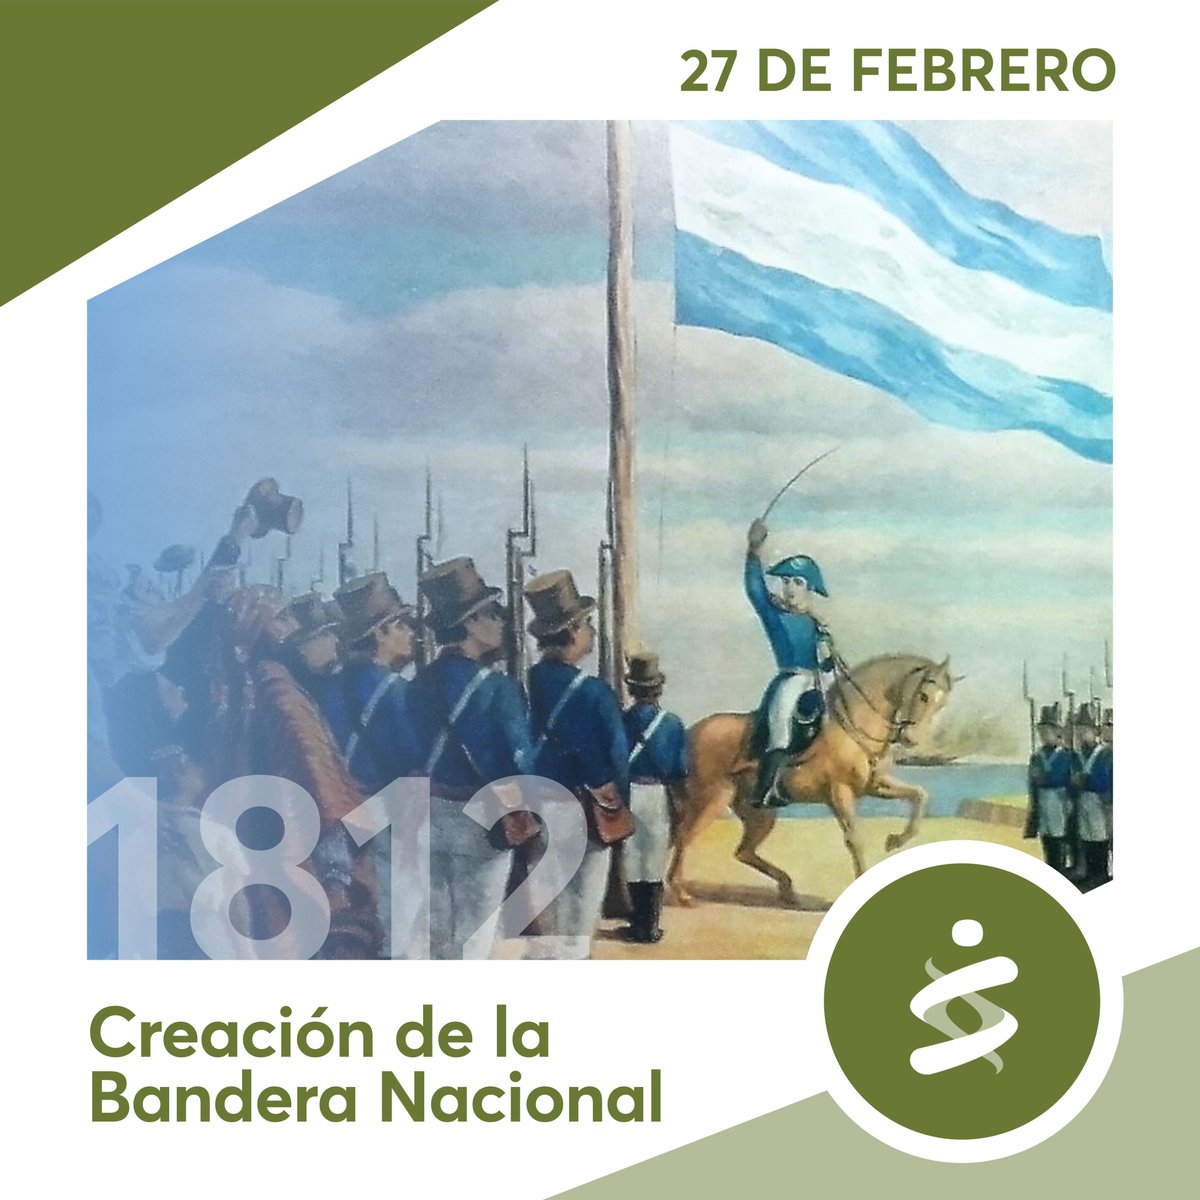 CREACIÓN DE LA BANDERA NACIONAL
Celebramos un nuevo aniversario del primer izamiento, a orillas del río Paraná, de la enseña que Belgrano nos legó, creada con los mismos colores de nuestra escarapela. 🇦🇷
#bandera
#argentina
#Belgrano 
#celesteyblanca